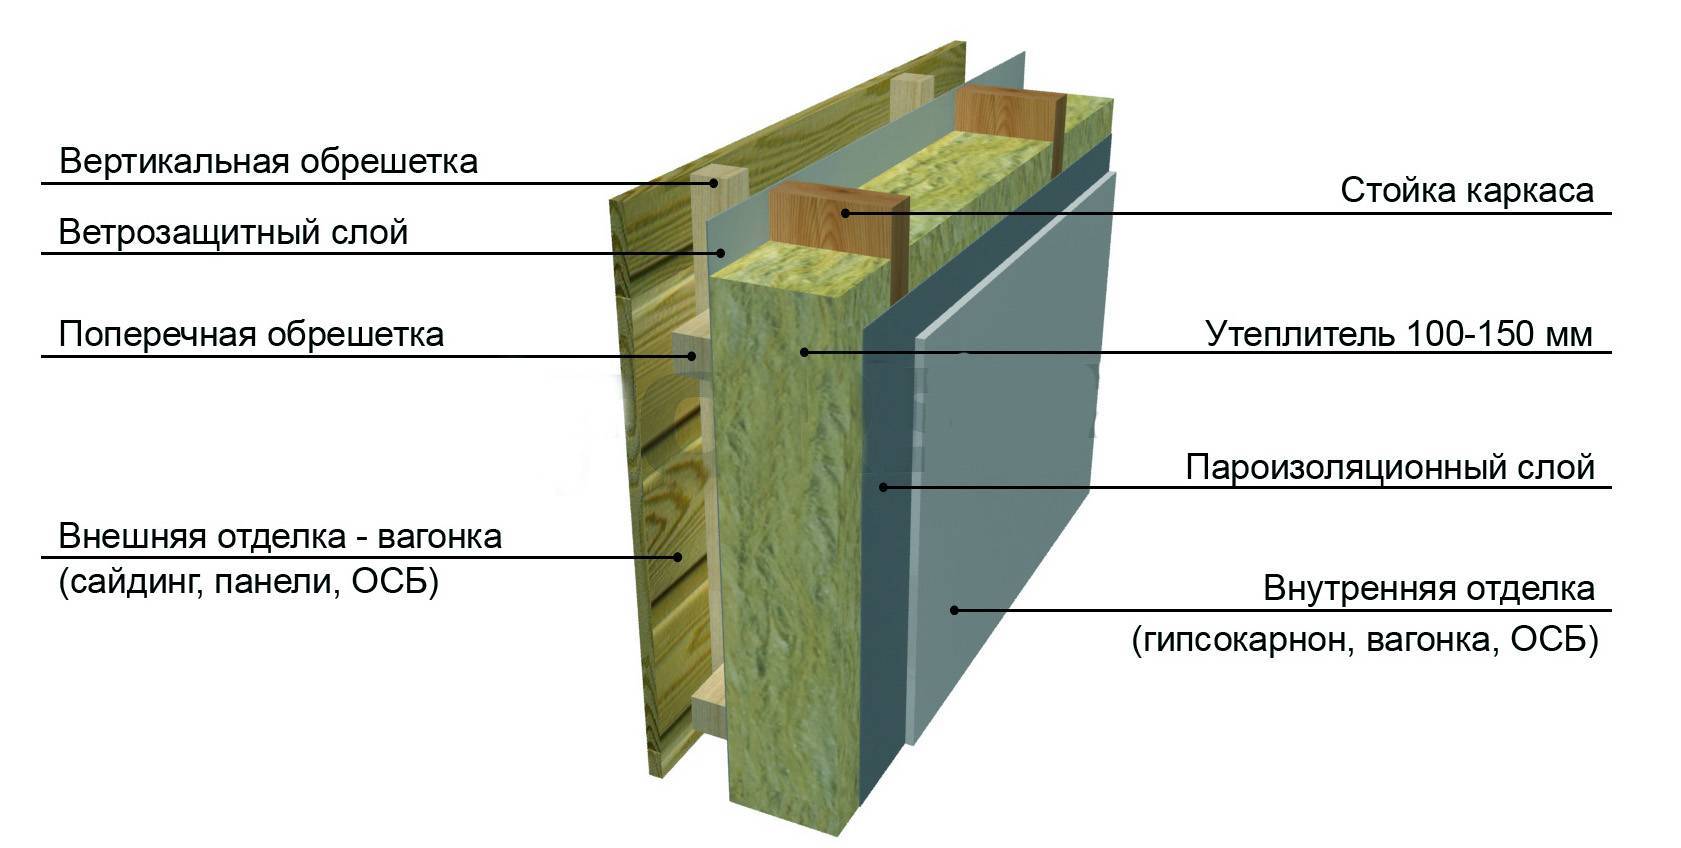 Утепление каркасного дома минватой: схема теплоизоляции минеральной ватой, как правильно выполнить его